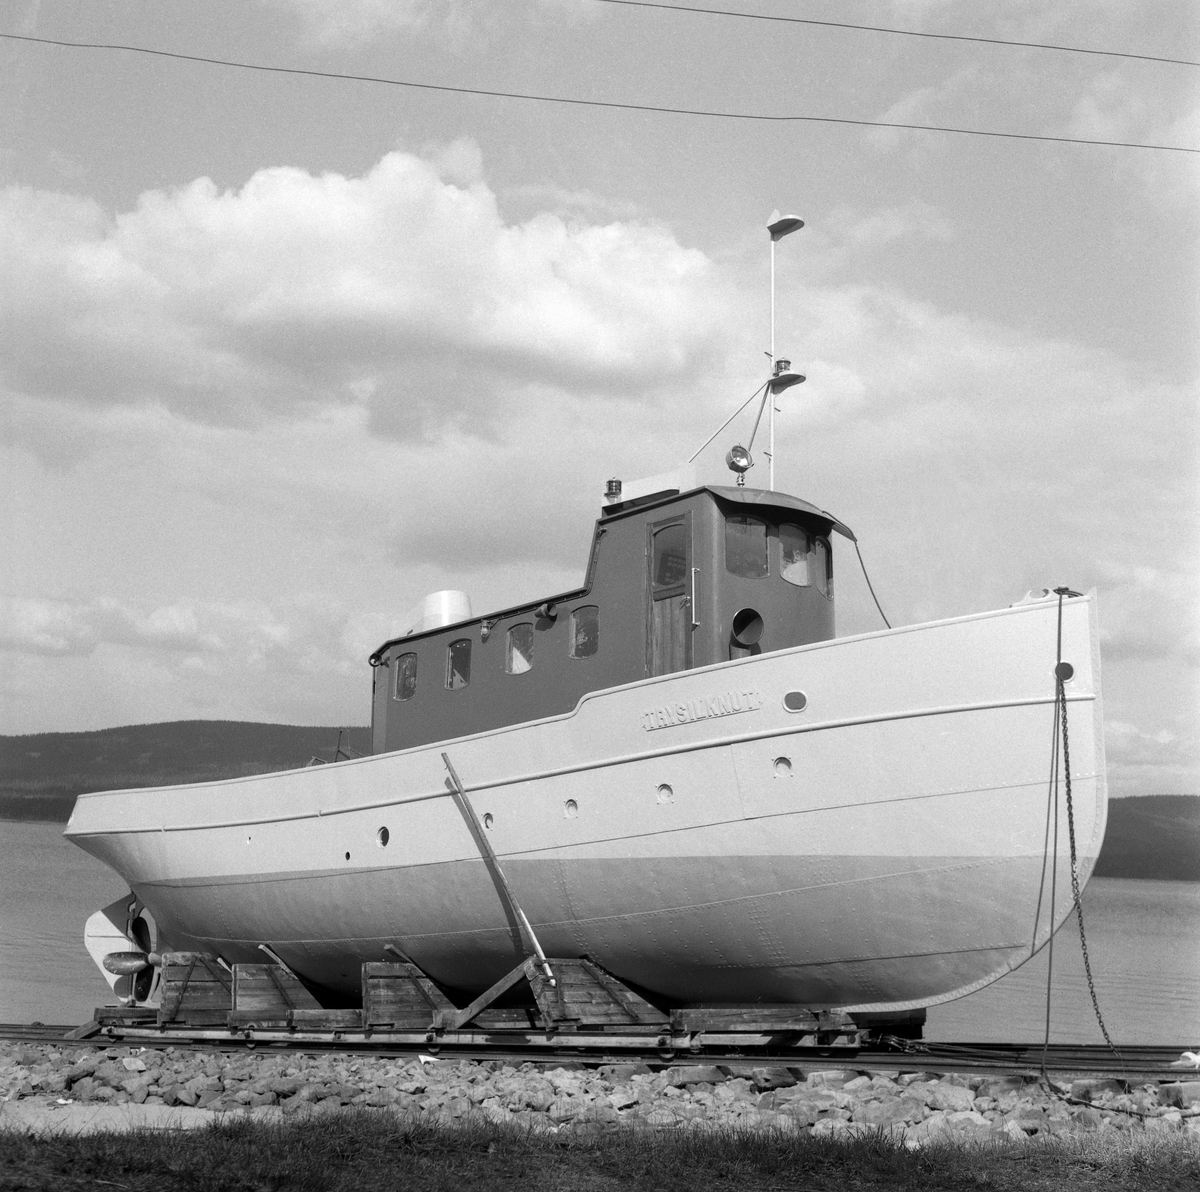 Slepebåten «Trysilknut», fotografert ved slippen på Sørlistøa ved Osensjøen i Åmot kommune i Hedmark i 1964. Fartøyet er fotografert skrått forfra, mot styrbord side. I 1964 var dette fartøyet 50 år gammelt. Skroget var slik det alltid hadde vært - 55 fot langt og 12 fot bredt, klinket sammen av det som i 1914 var «bedste sort skibsbygningsstaal», levert av Glommens mek. Verksted i Fredrikstad. Men Trysilknut var i utgangspunktet et dampdrevet fartøy. Dampmaskinen viste seg imidlertid i veikeste laget for de store tømmerbommene som skulle bukseres over den bortimot tre mil lange og 47 kvadratkilometer store Osensjøen. Etter 2. verdenskrig ble mange av slepebåtene som fellesfløtingsforeningene disponerte ombygd til dieseldrift. Ved å gjøre en slik investering så man for seg at man på litt lengre sikt skulle oppnå større trekkraft og samtidig redusere driftskostnadene. Dieselmotorene krevde nemlig langt mindre betjening enn dampmaskinene, og følgelig ville en dieseldrevet slepebåt kunne opereres med mindre mannskap enn et dampfartøy. I Trysilknuts tilfelle så man for seg at to fyrbøtere og en maskinist kunne utgå fra besetningen. Her lå det et betydelig innsparingspotensial i en periode med stigende lønnskostnader. I 1956 sendte direktøren i Glomma fellesfløtingsforening prisforespørsler til firmaer som man antok kunne påta seg ombyggingsarbeidet. Oppdraget gikk også denne gangen til Glommens mek. verksted. Demonteringa av dampmaskinen innebar også at det ble en del ledig plass om bord. Ominnredningsarbeidet ble overlatt til Ivar Hagens båtbyggeri på Hjelset utenfor Molde. Resultatet ble at Trysilknut - etter ombyggingsarbeidet vinteren 1957-58 framsto med et noe endret eksteriør og et fullstendig modernisert interiør.